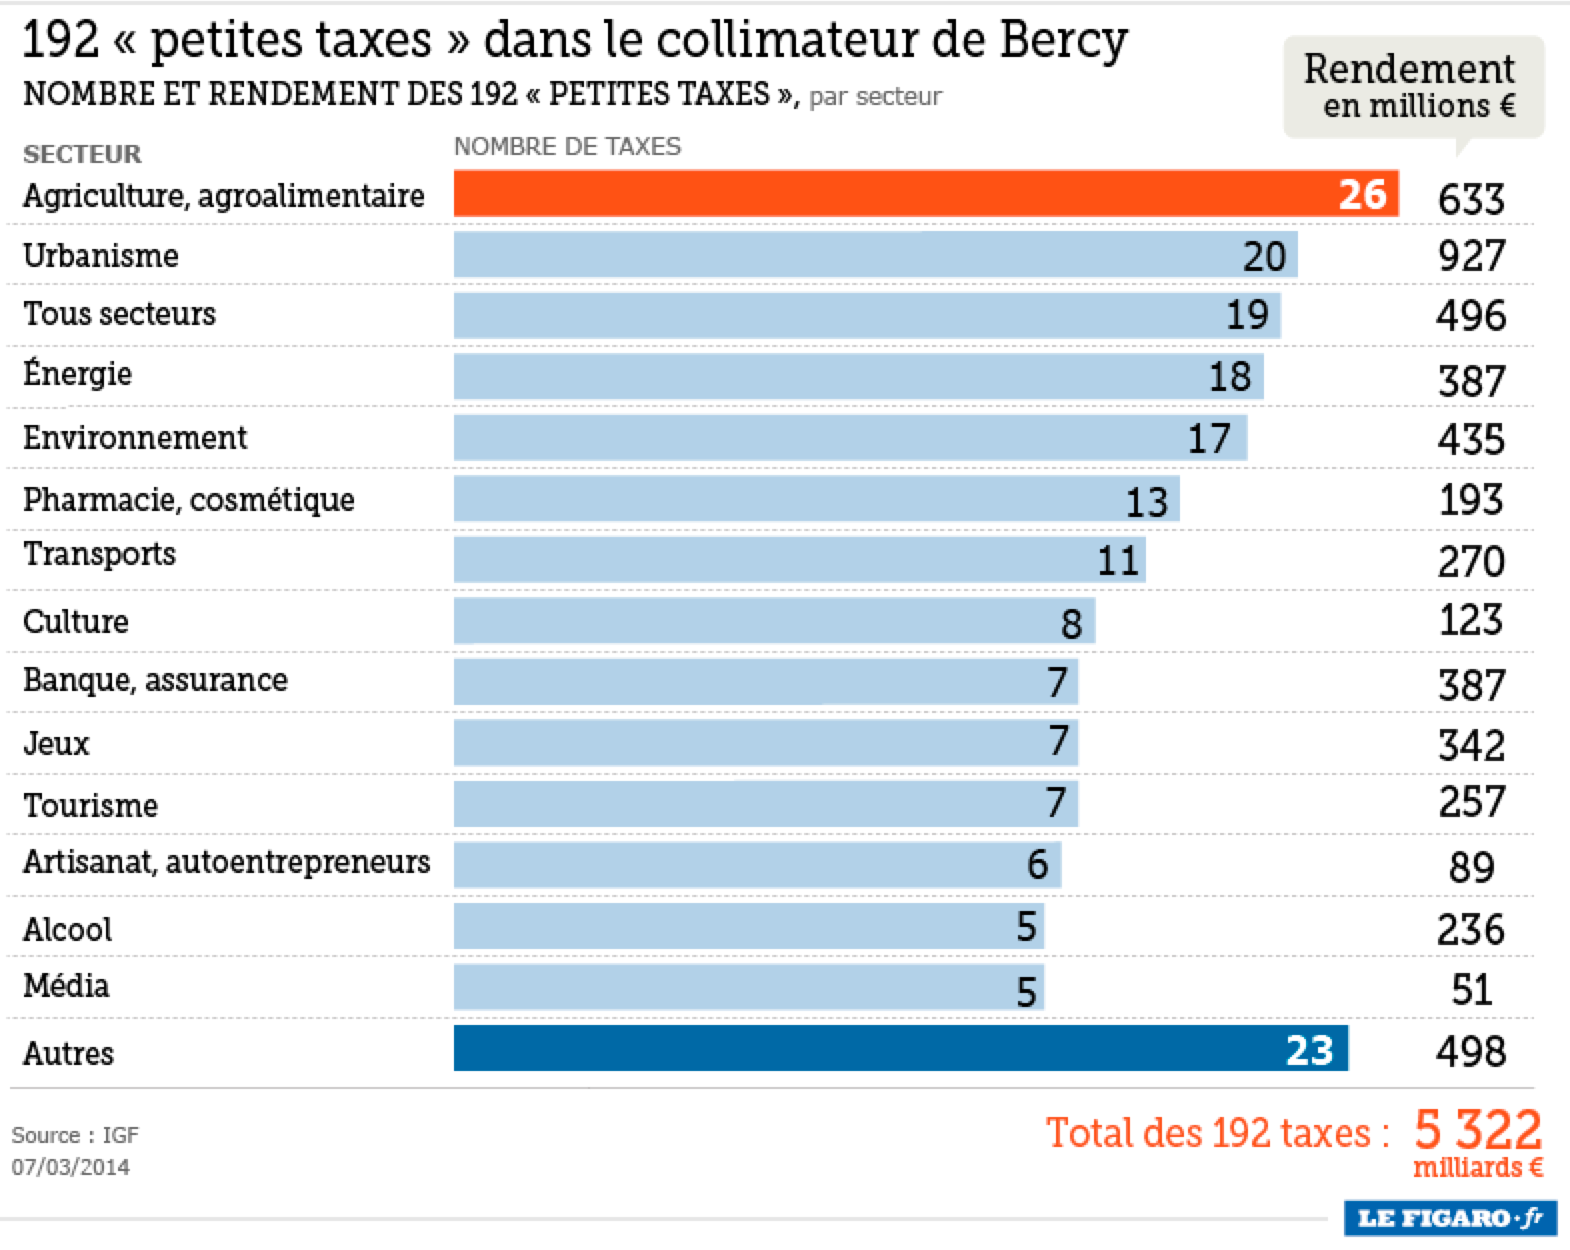 simon-thorpe-s-ideas-on-the-economy-france-has-192-petites-taxes